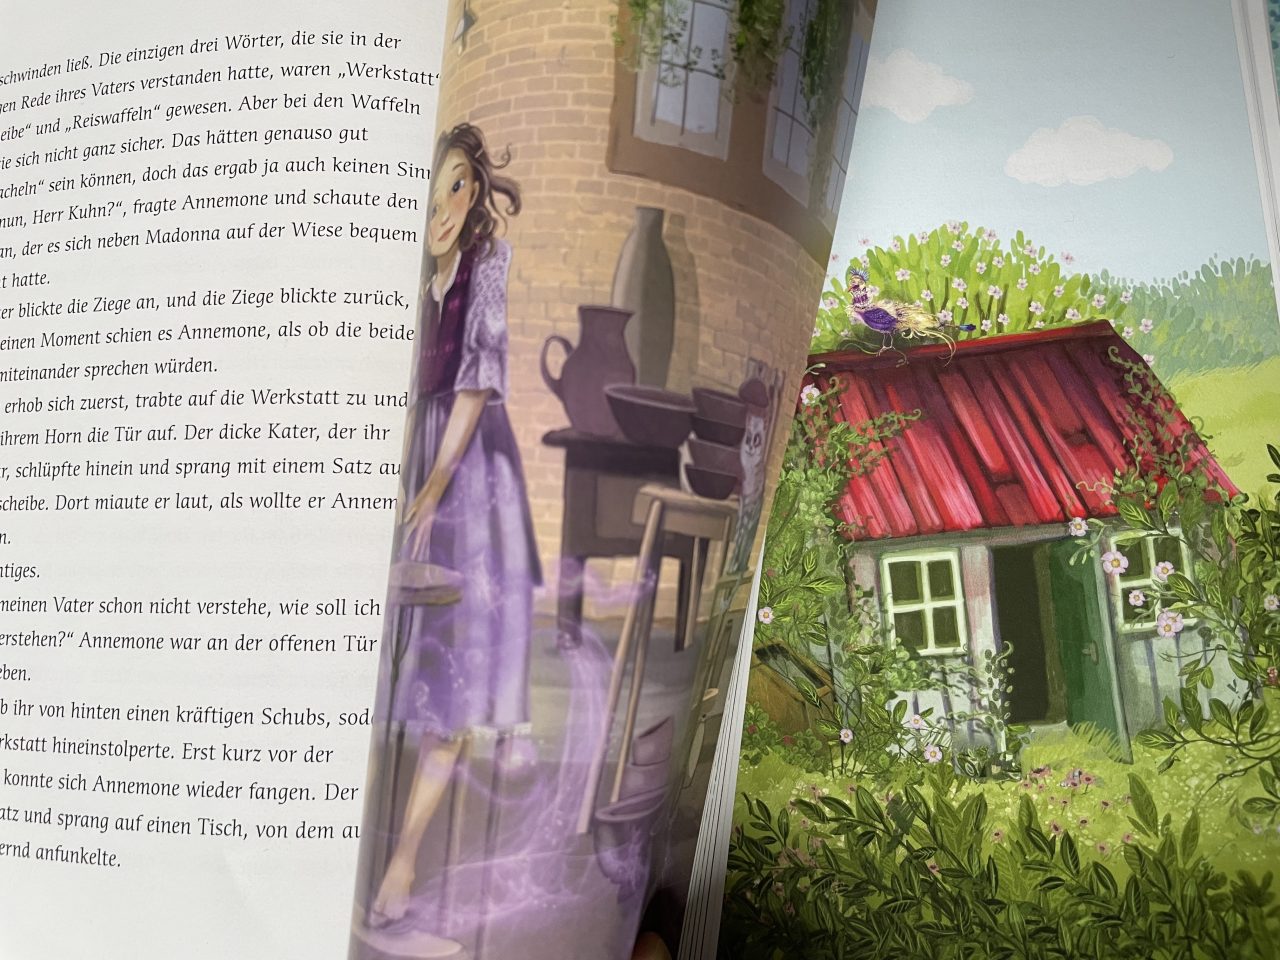 aufgeschlagenes Kinderbuch "Annemone Apfelstroh" mit Text und Illustration - zusehen ist das Mädchen in einer Töpferwerkstatt und ein Häuschen im Grünen 